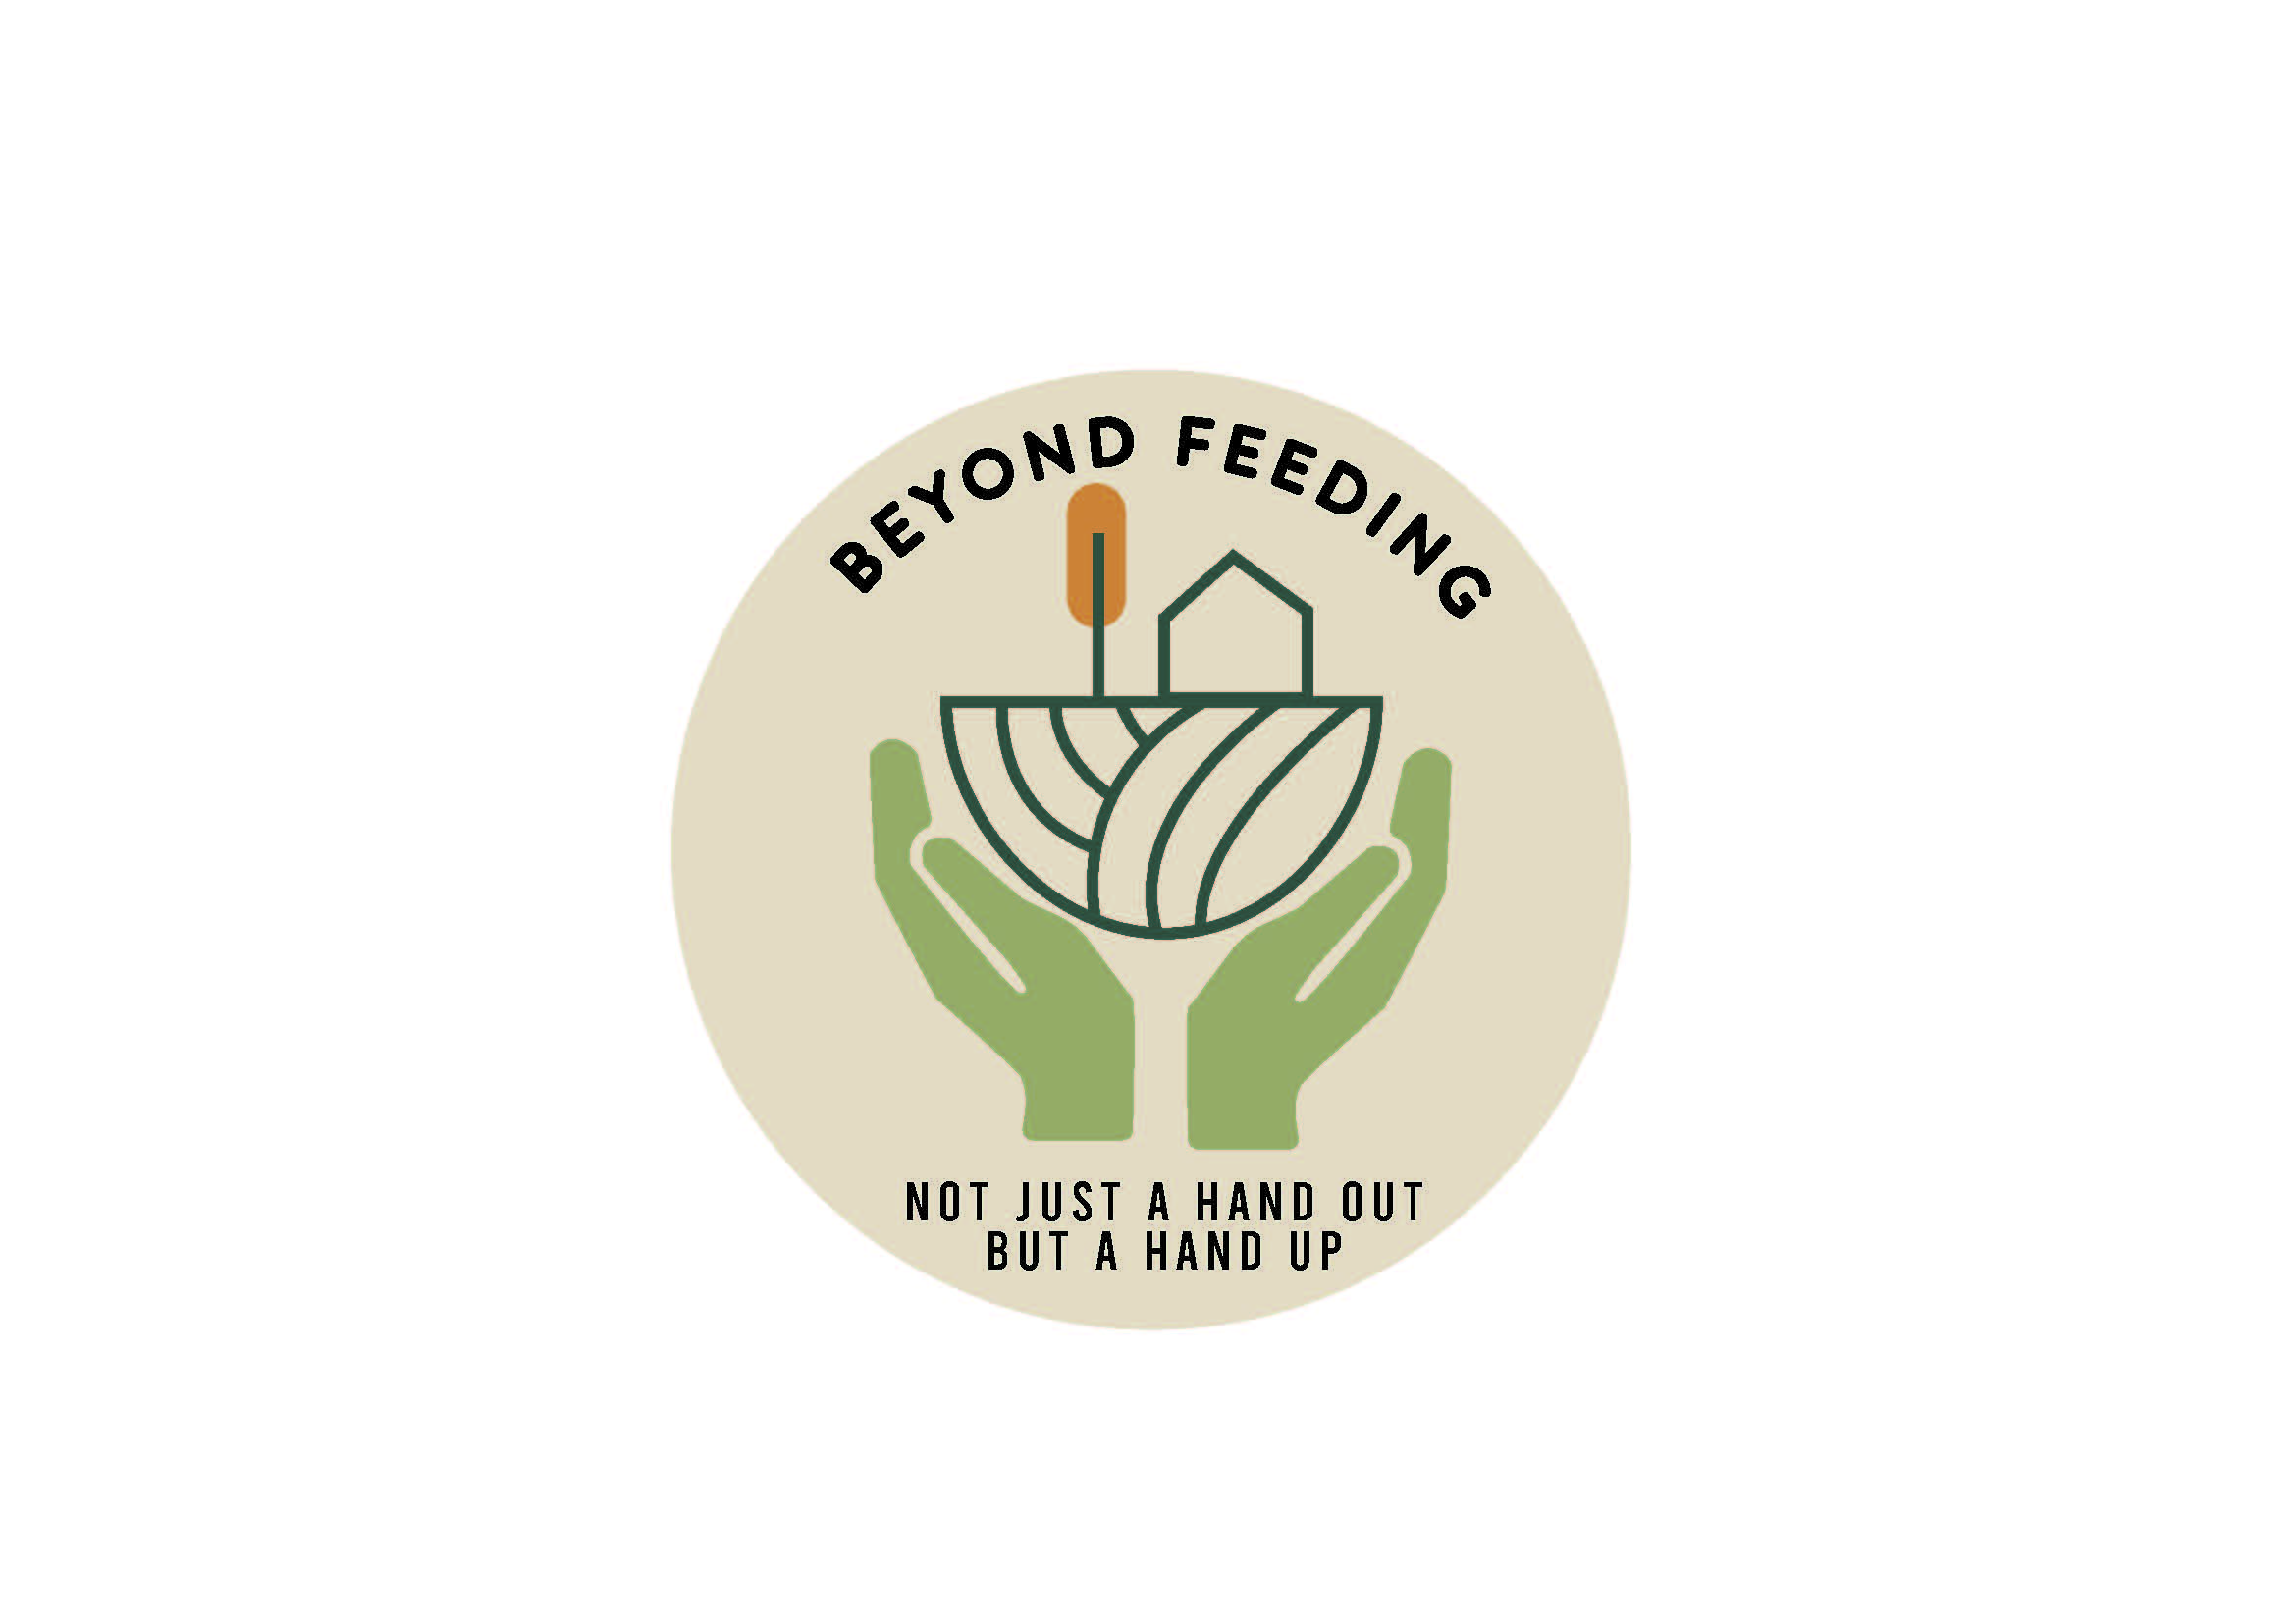 Beyond Feeding